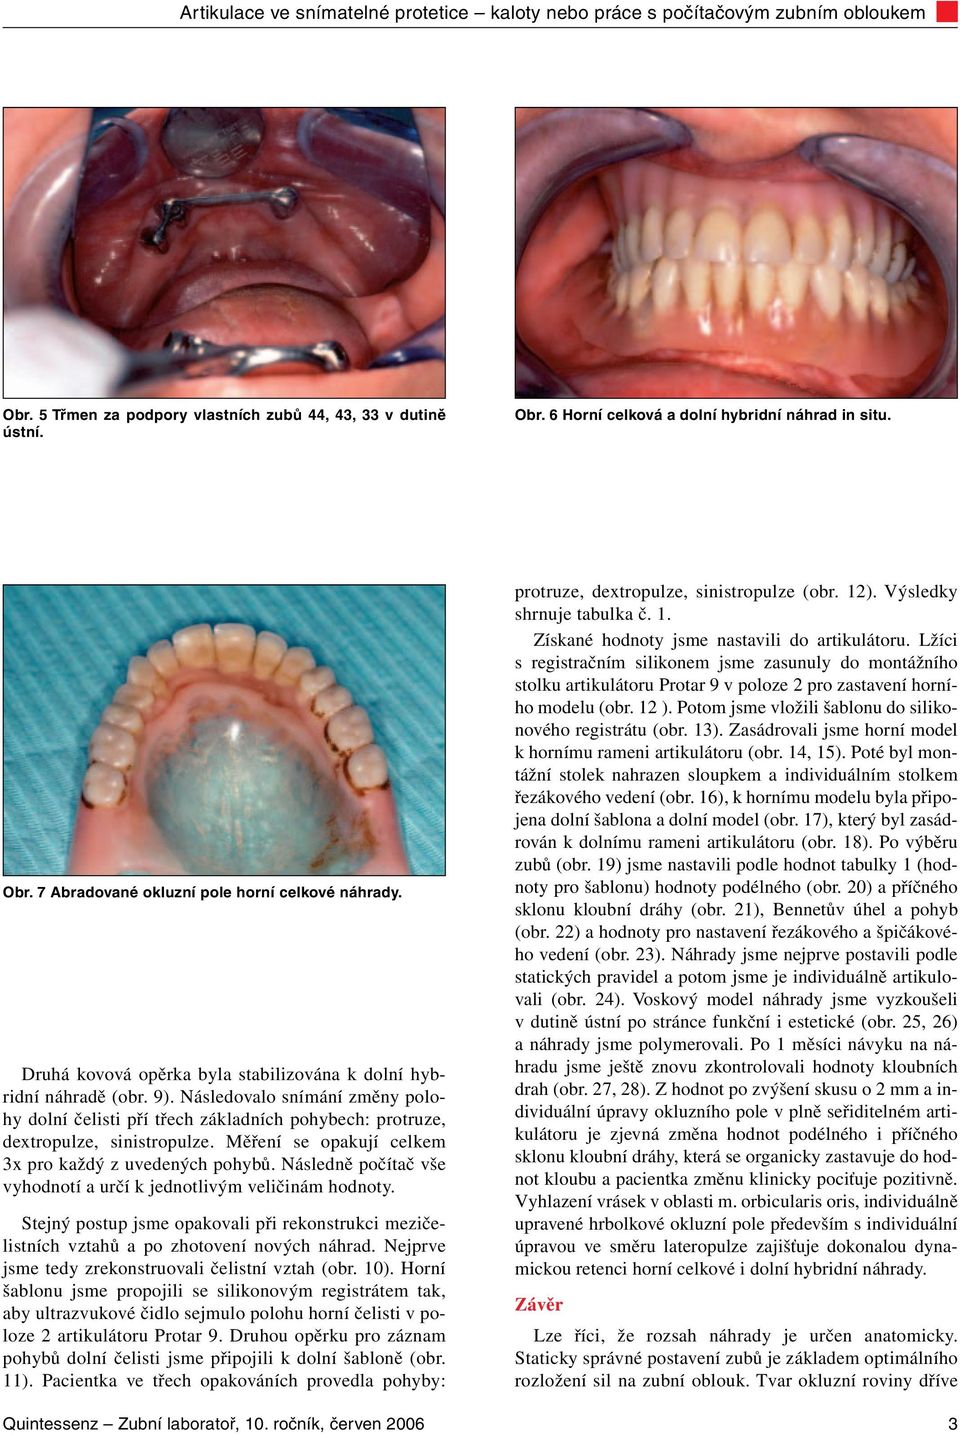 Artikulace ve snímatelné protetice kaloty nebo práce s počítačovým zubním  obloukem - PDF Free Download